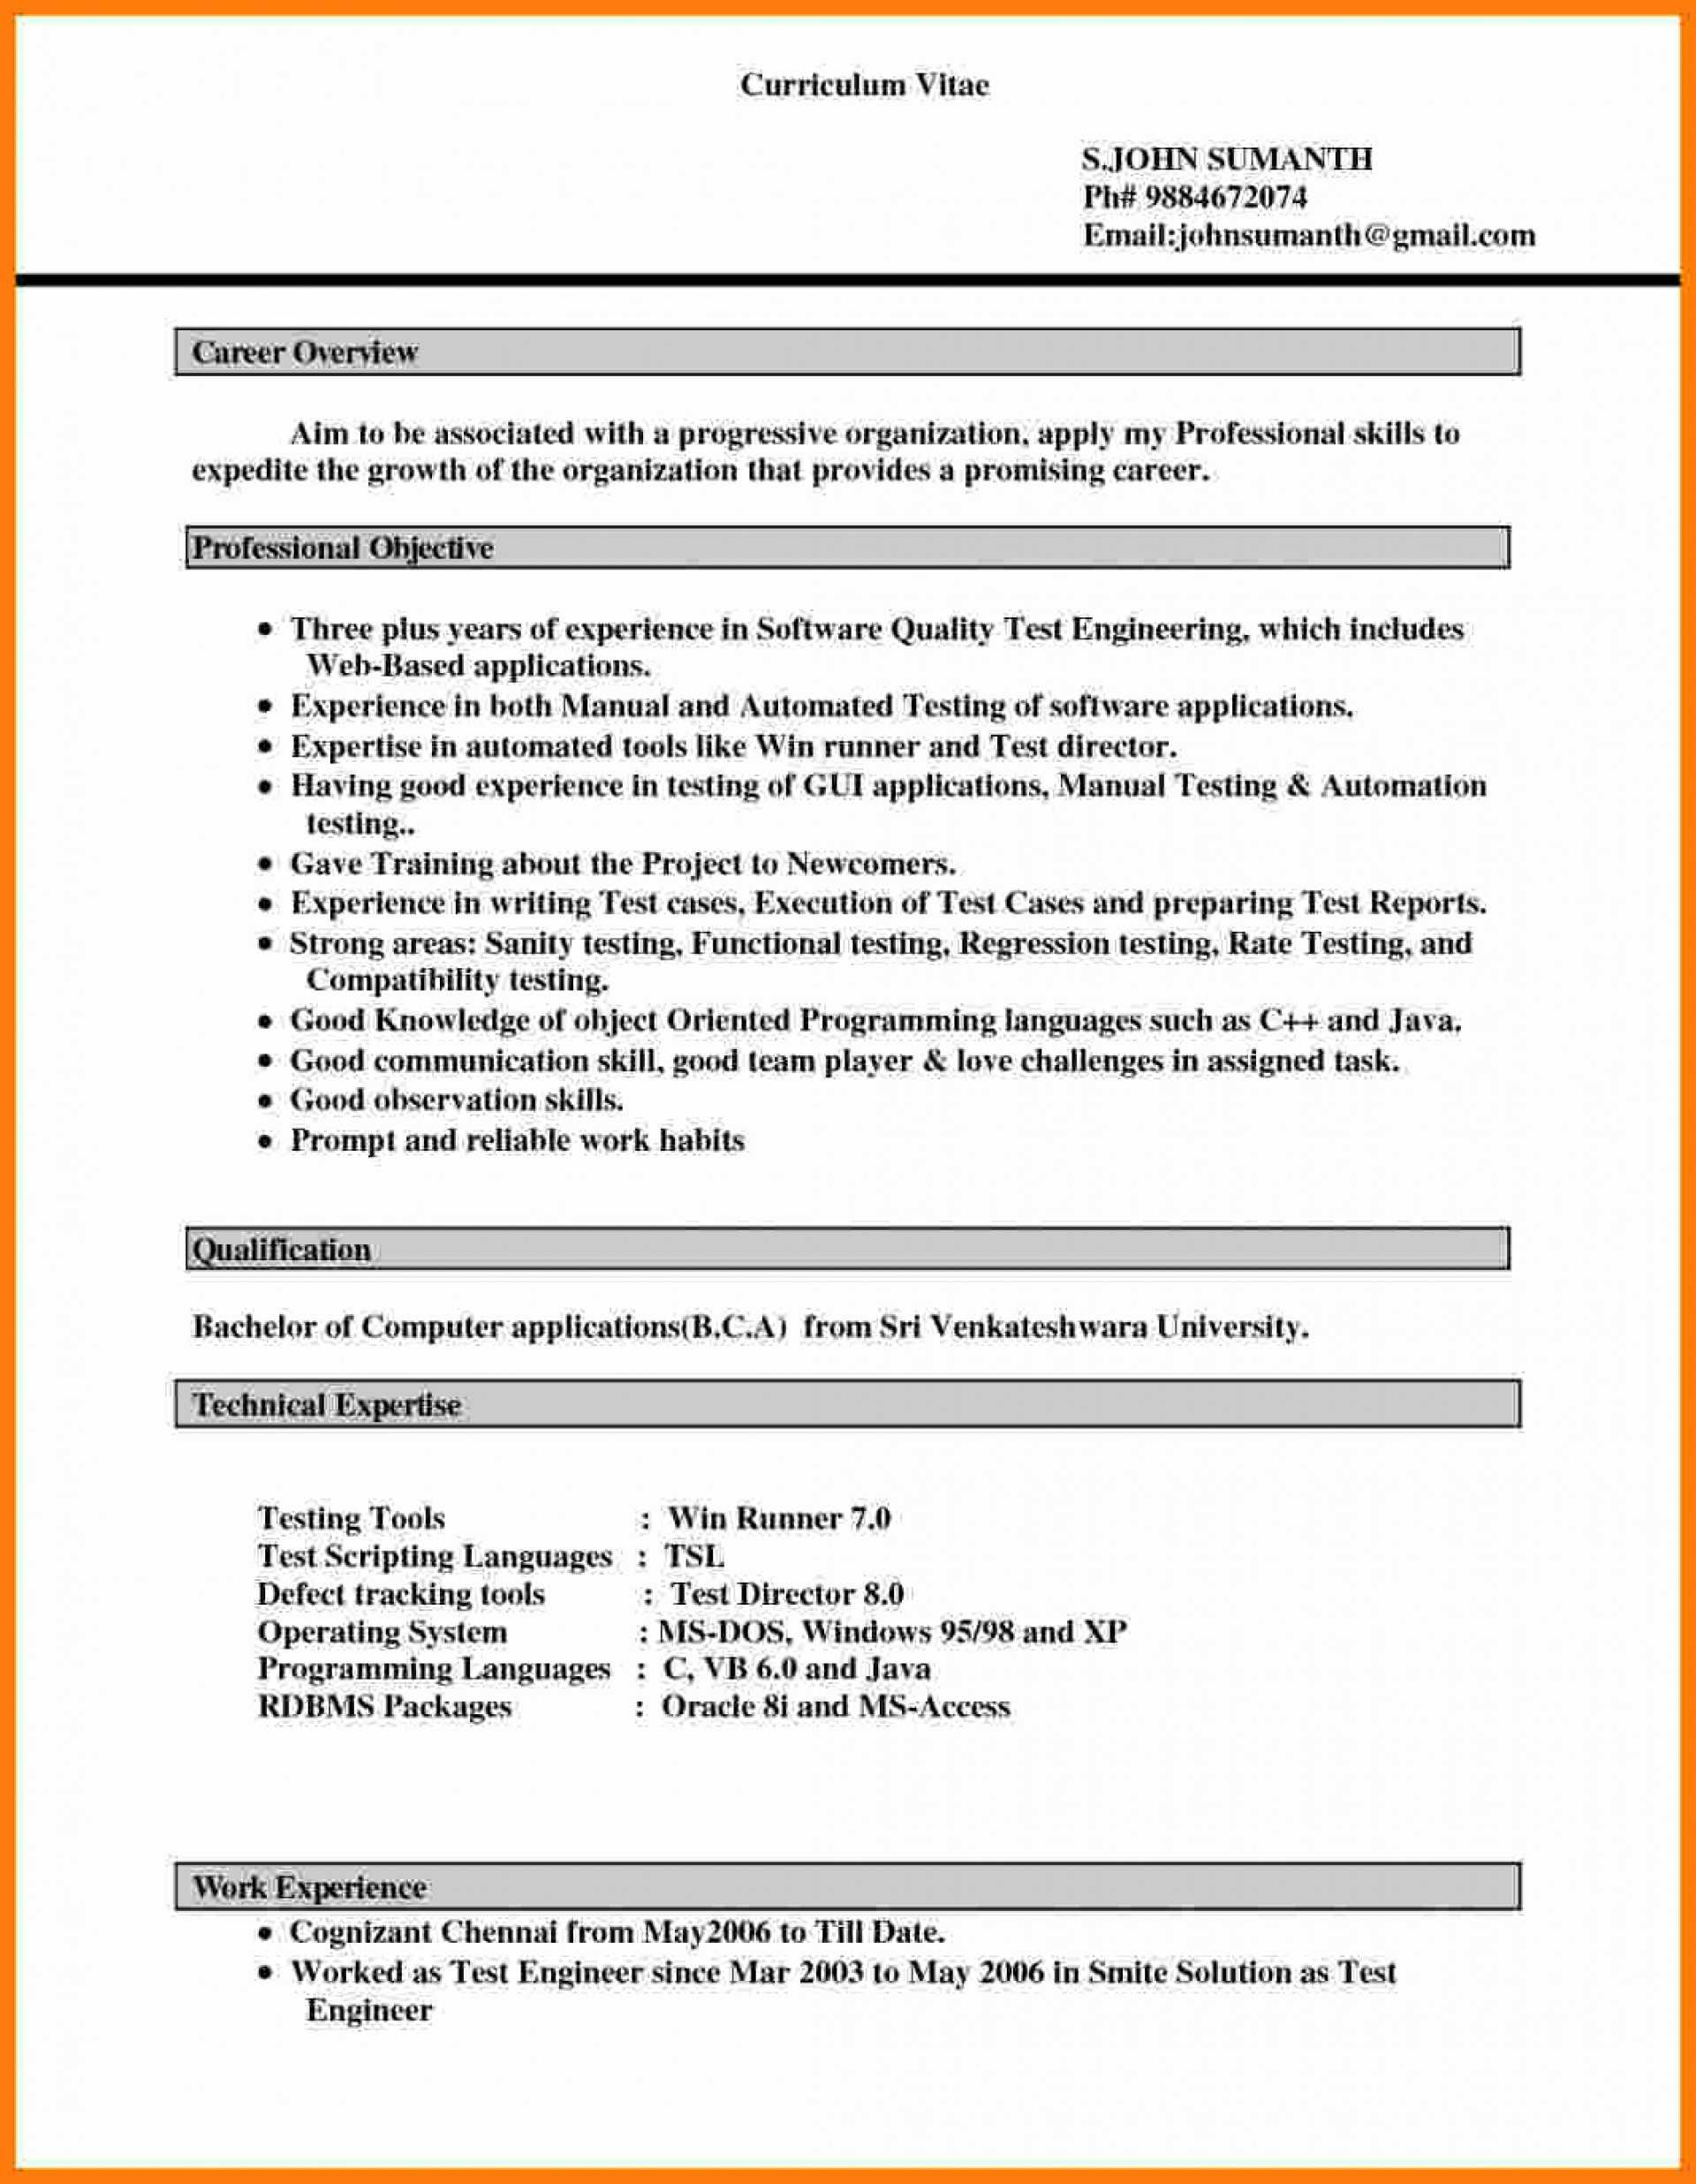 029 Resume Templates For Microsoft Word Lovely Cv Layout Intended For Resume Templates Microsoft Word 2010